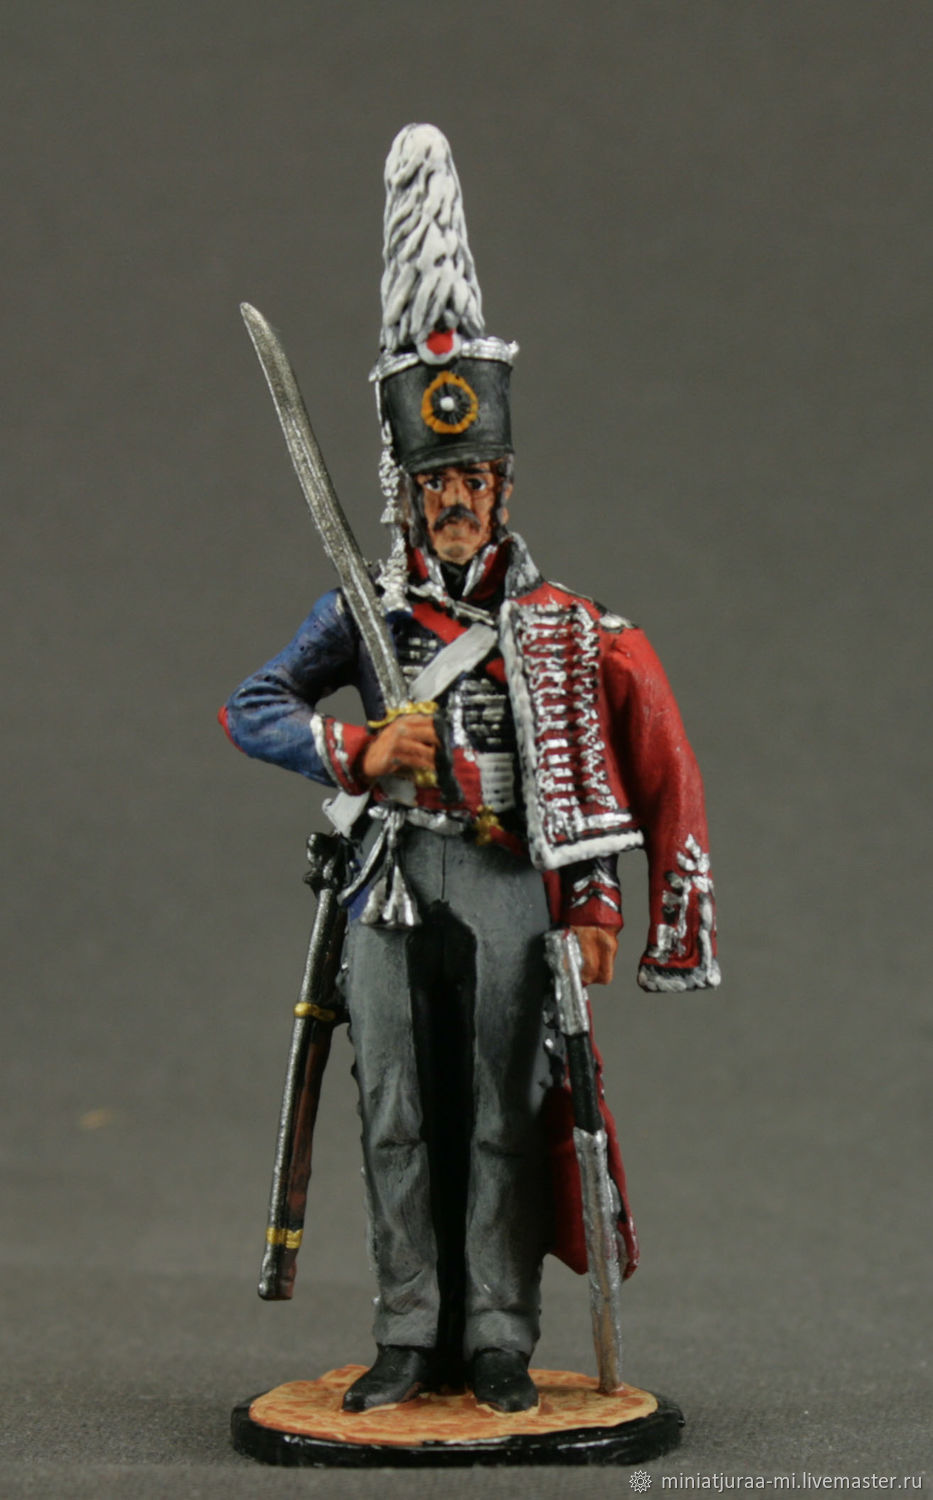 EK Castings 54 mm Tin Soldier Napoleonic War FRANCE set 3-3 figures 1:32 